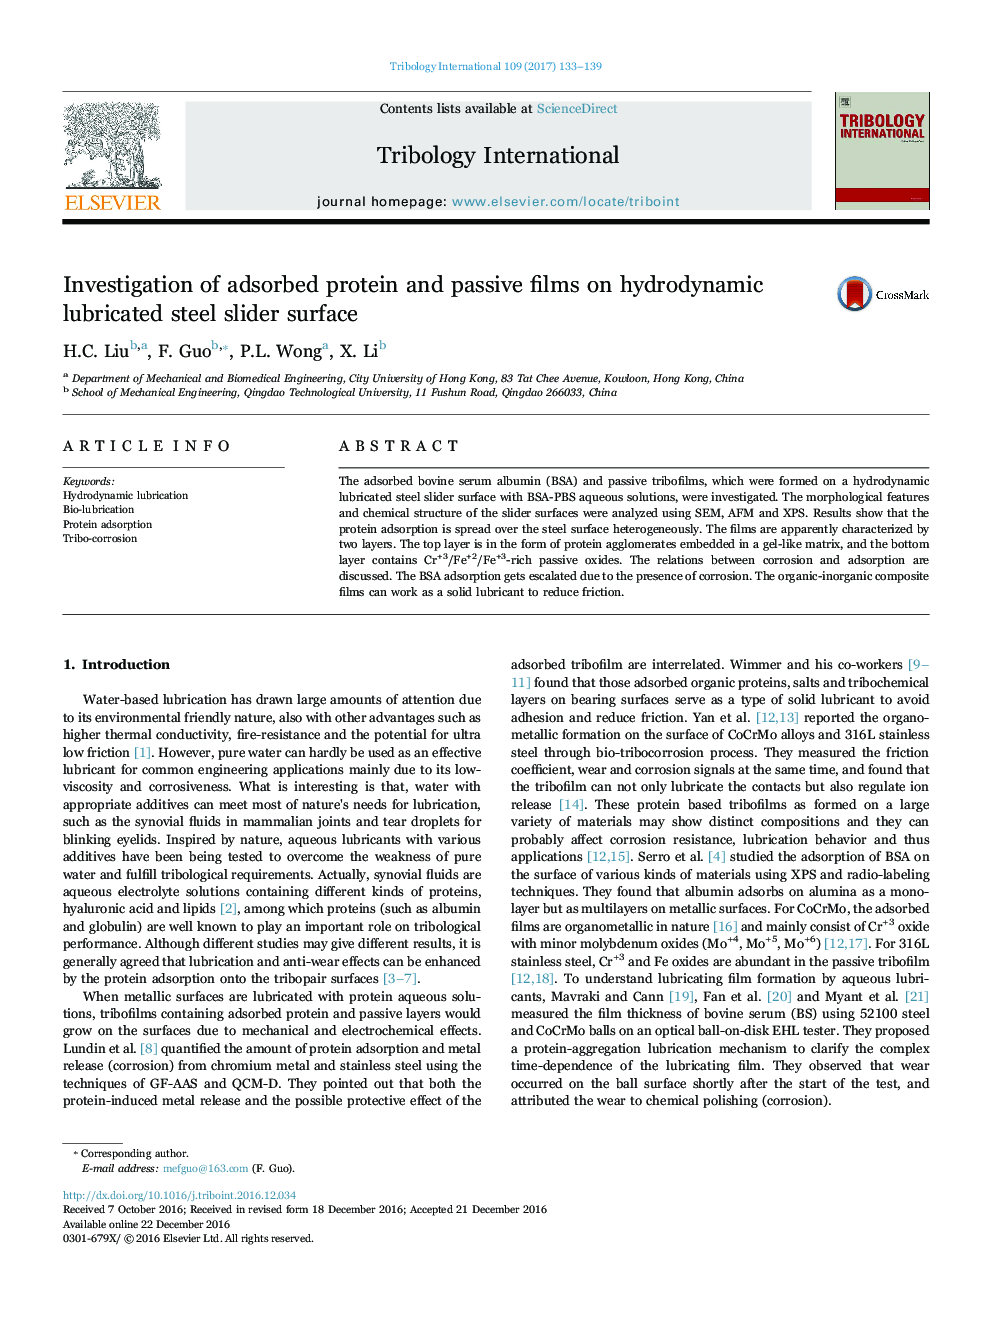 بررسی پروتئین های جذب شده و فیلم های غیر فعال بر روی سطح لغزنده فولاد روانکاری هیدرودینامیکی 